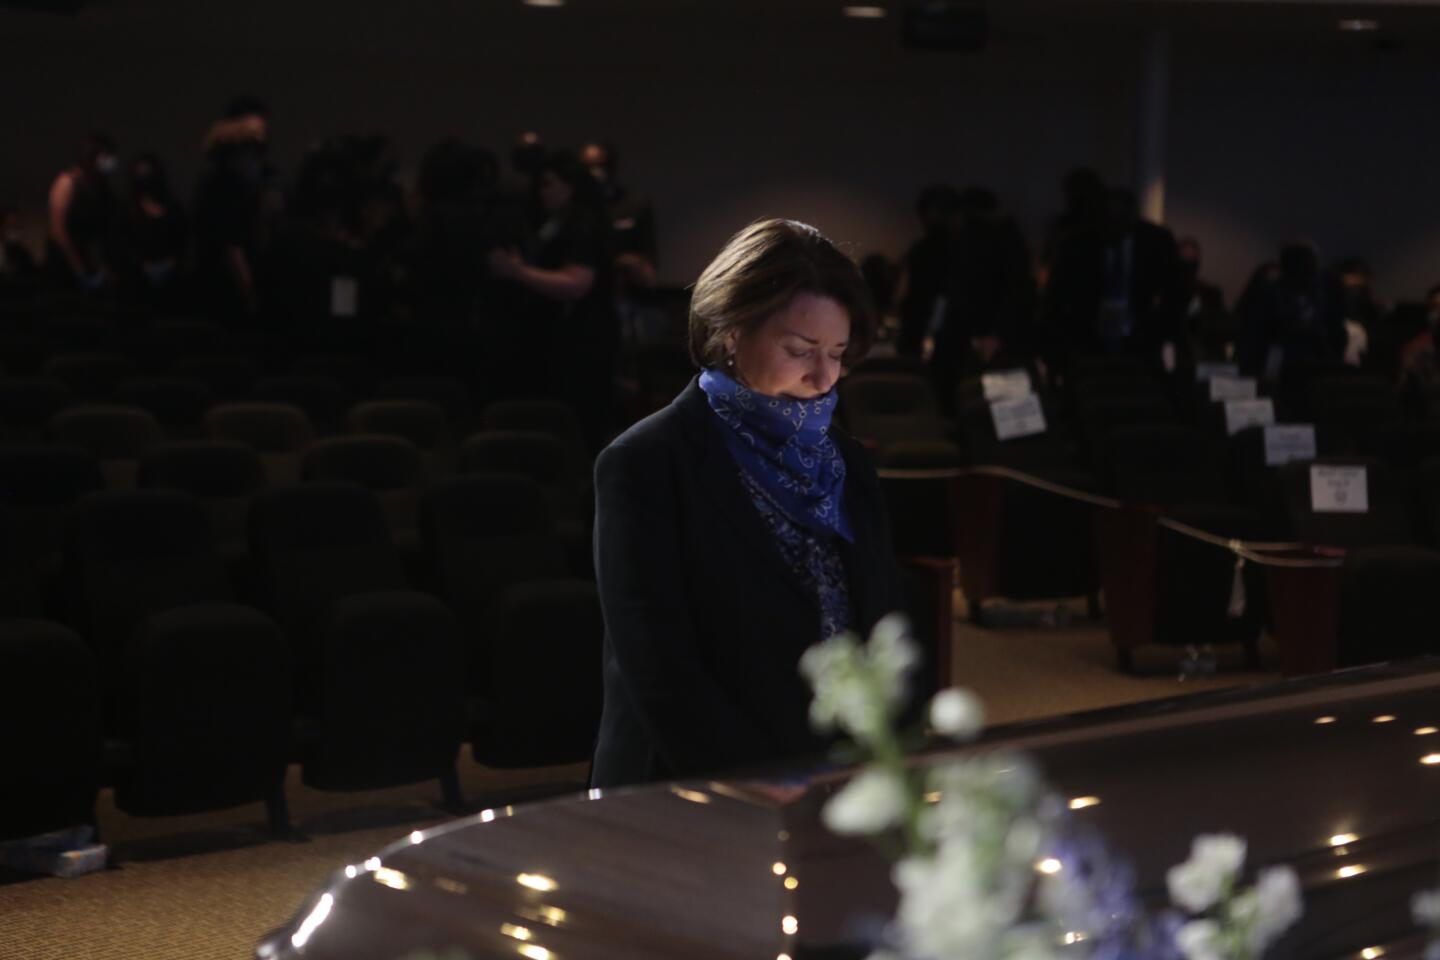 Sen. Amy Klobuchar pauses before George Floyd's casket.